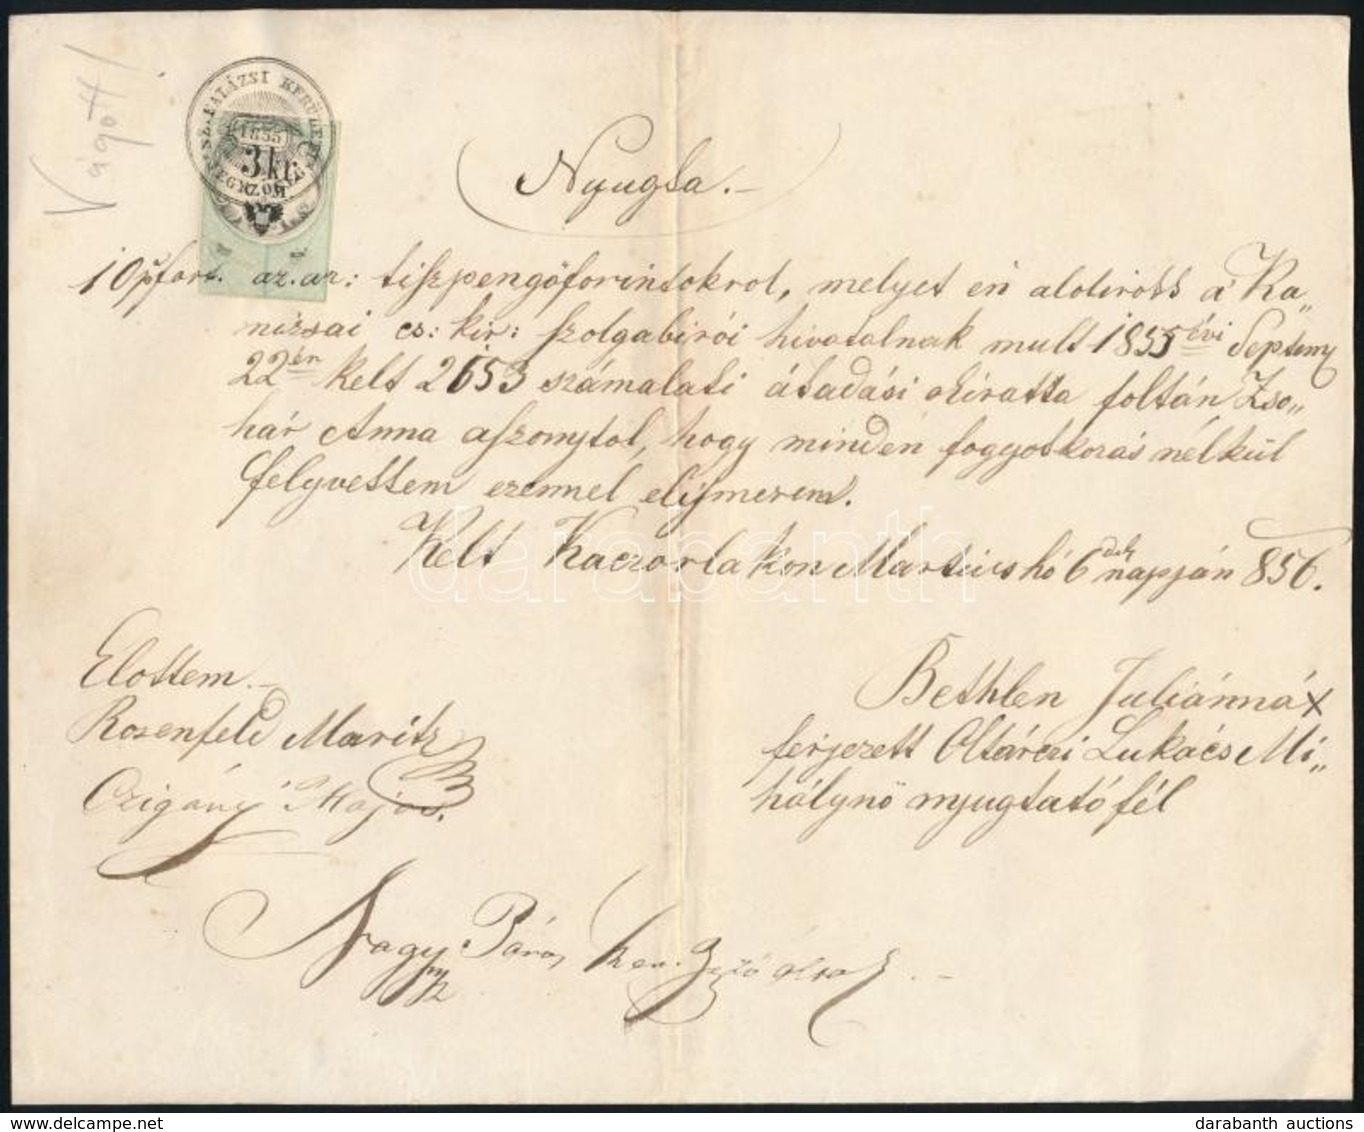 1856 3kr CM Ollóval Vágott Okmánybélyeg  Kaczorlak Okmányon /  Document Stamp Cut With Scissors - Ohne Zuordnung